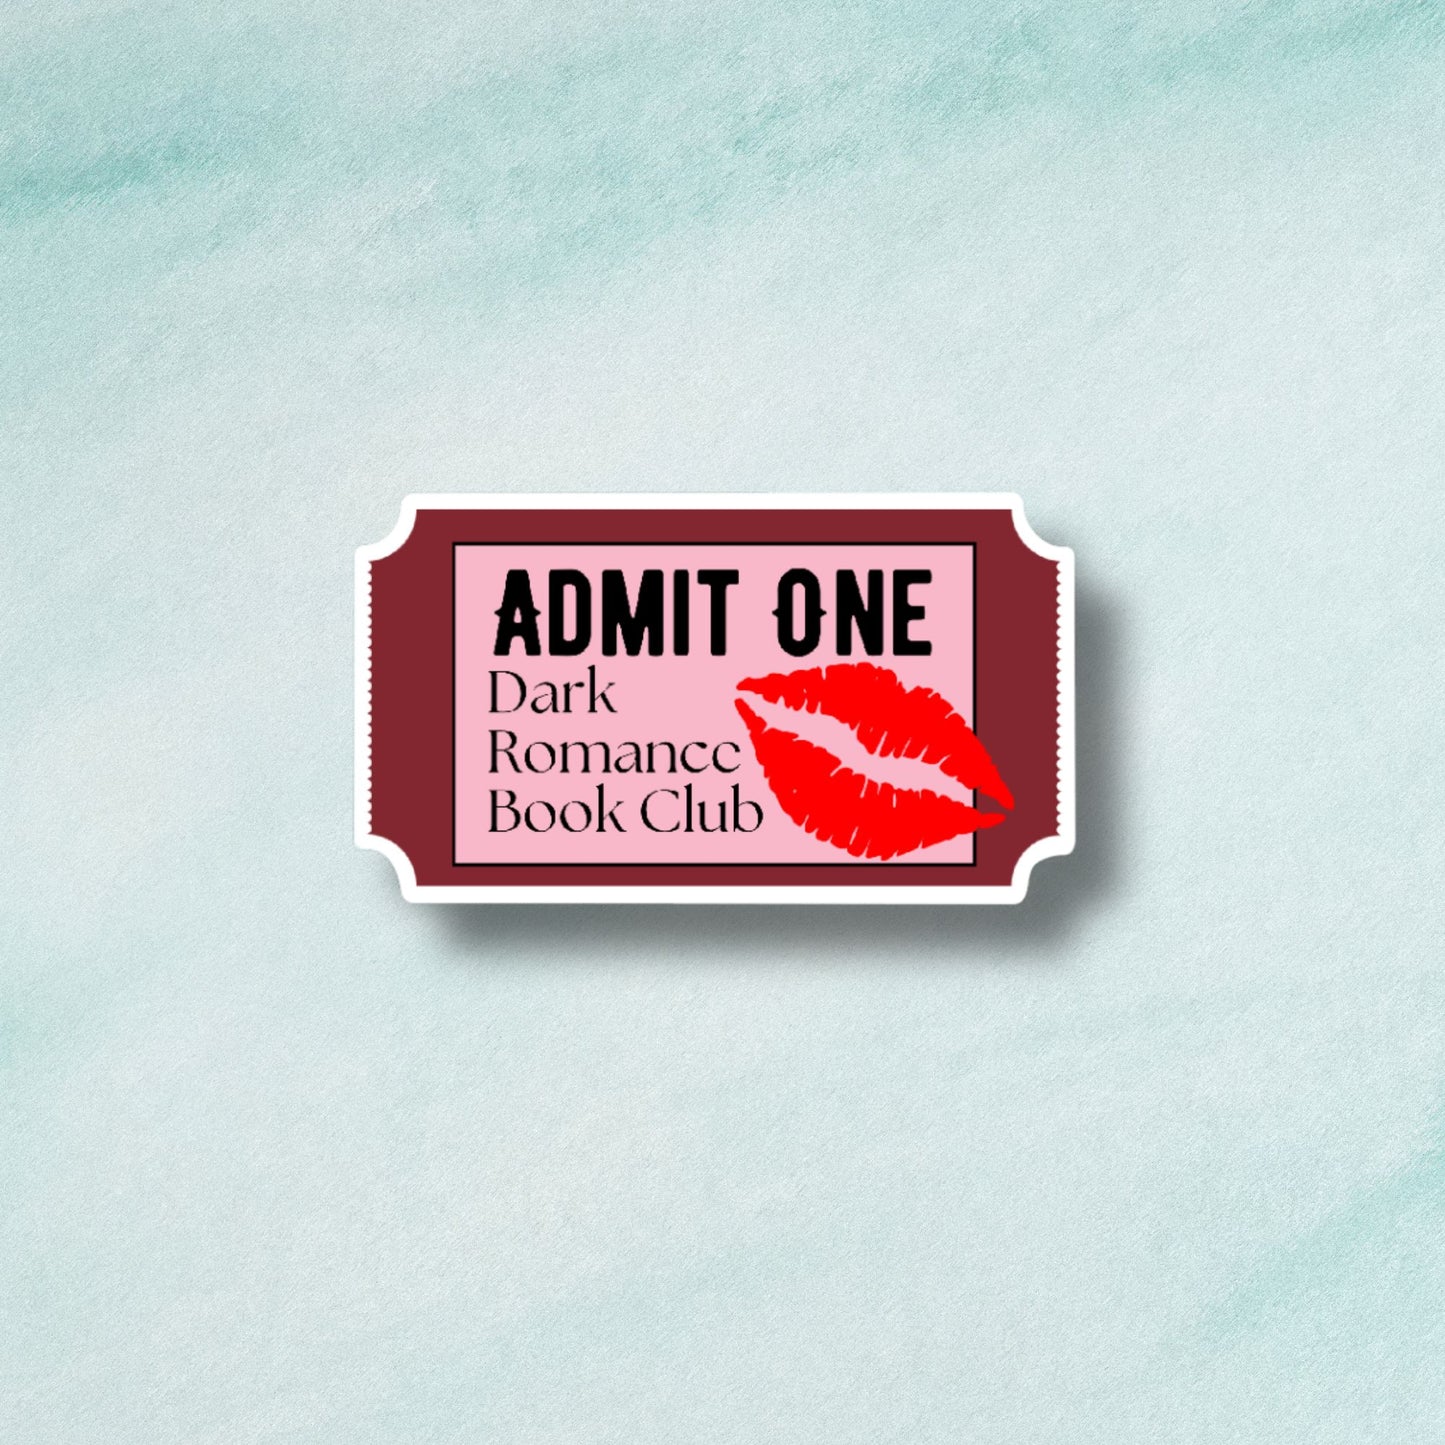 Admit One Ticket Sticker